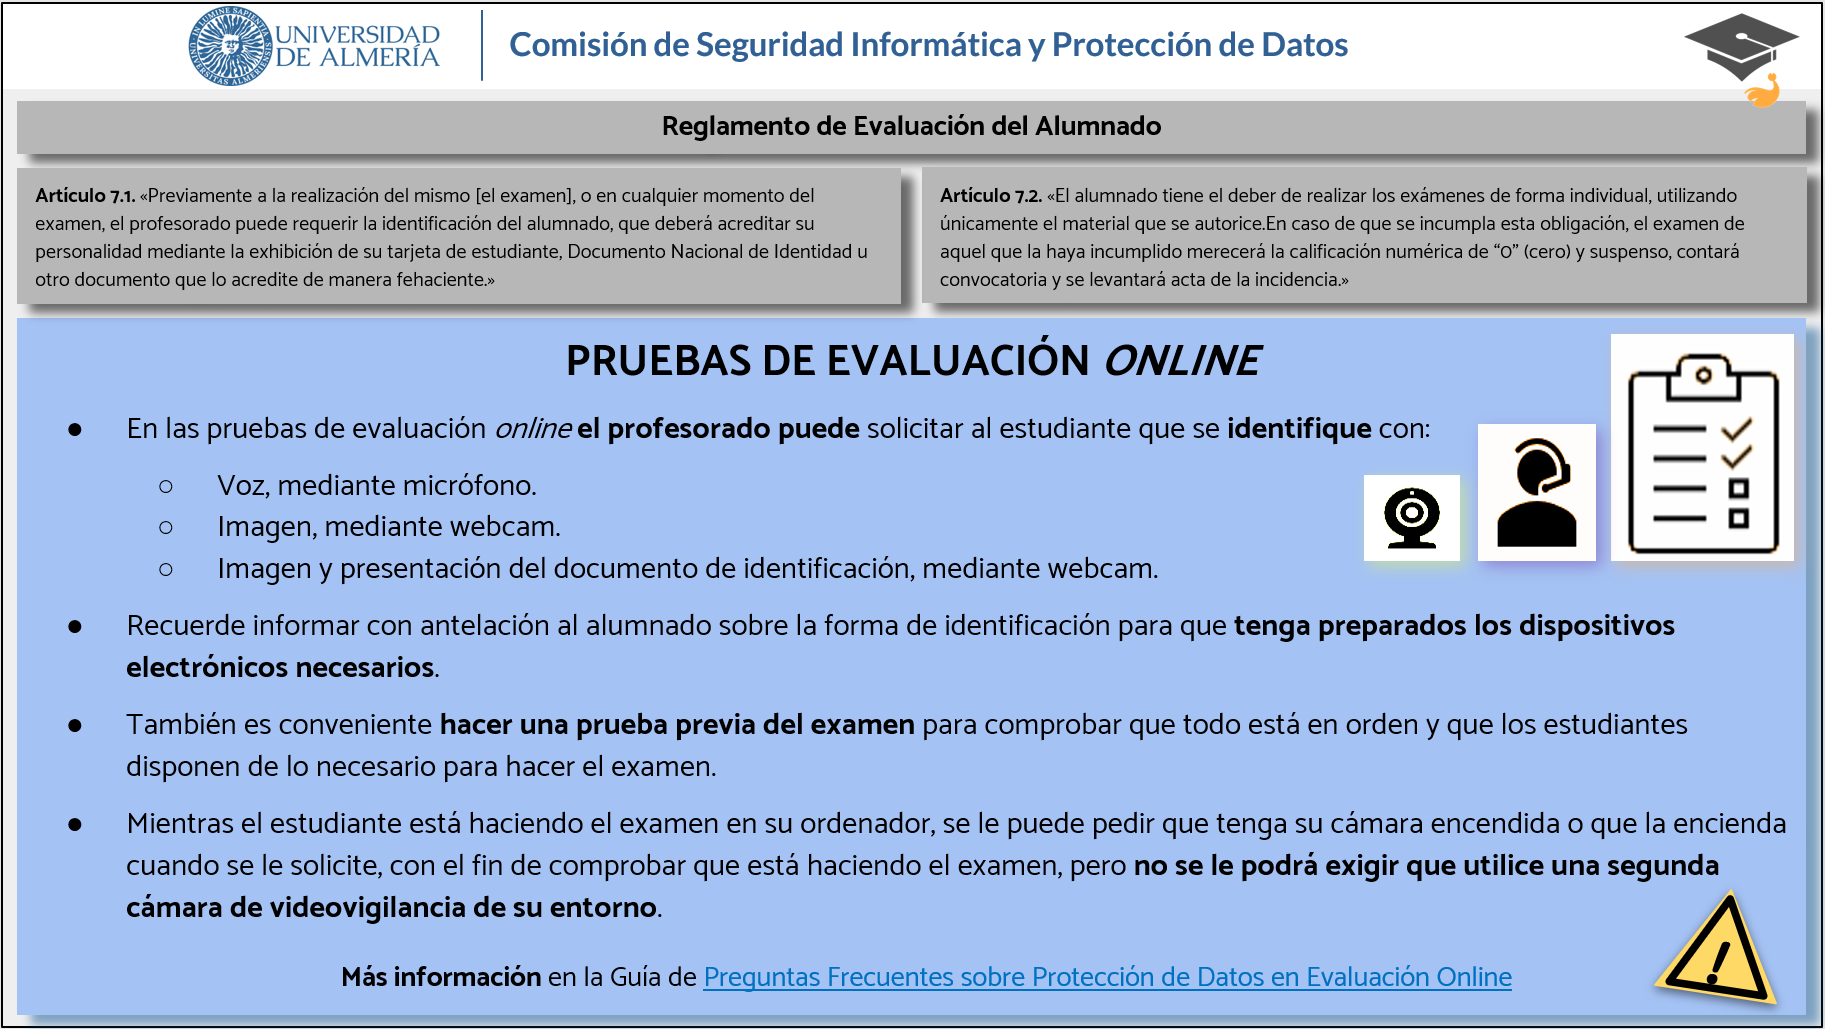 Instrucciones de protección de datos para las pruebas de evaluación online